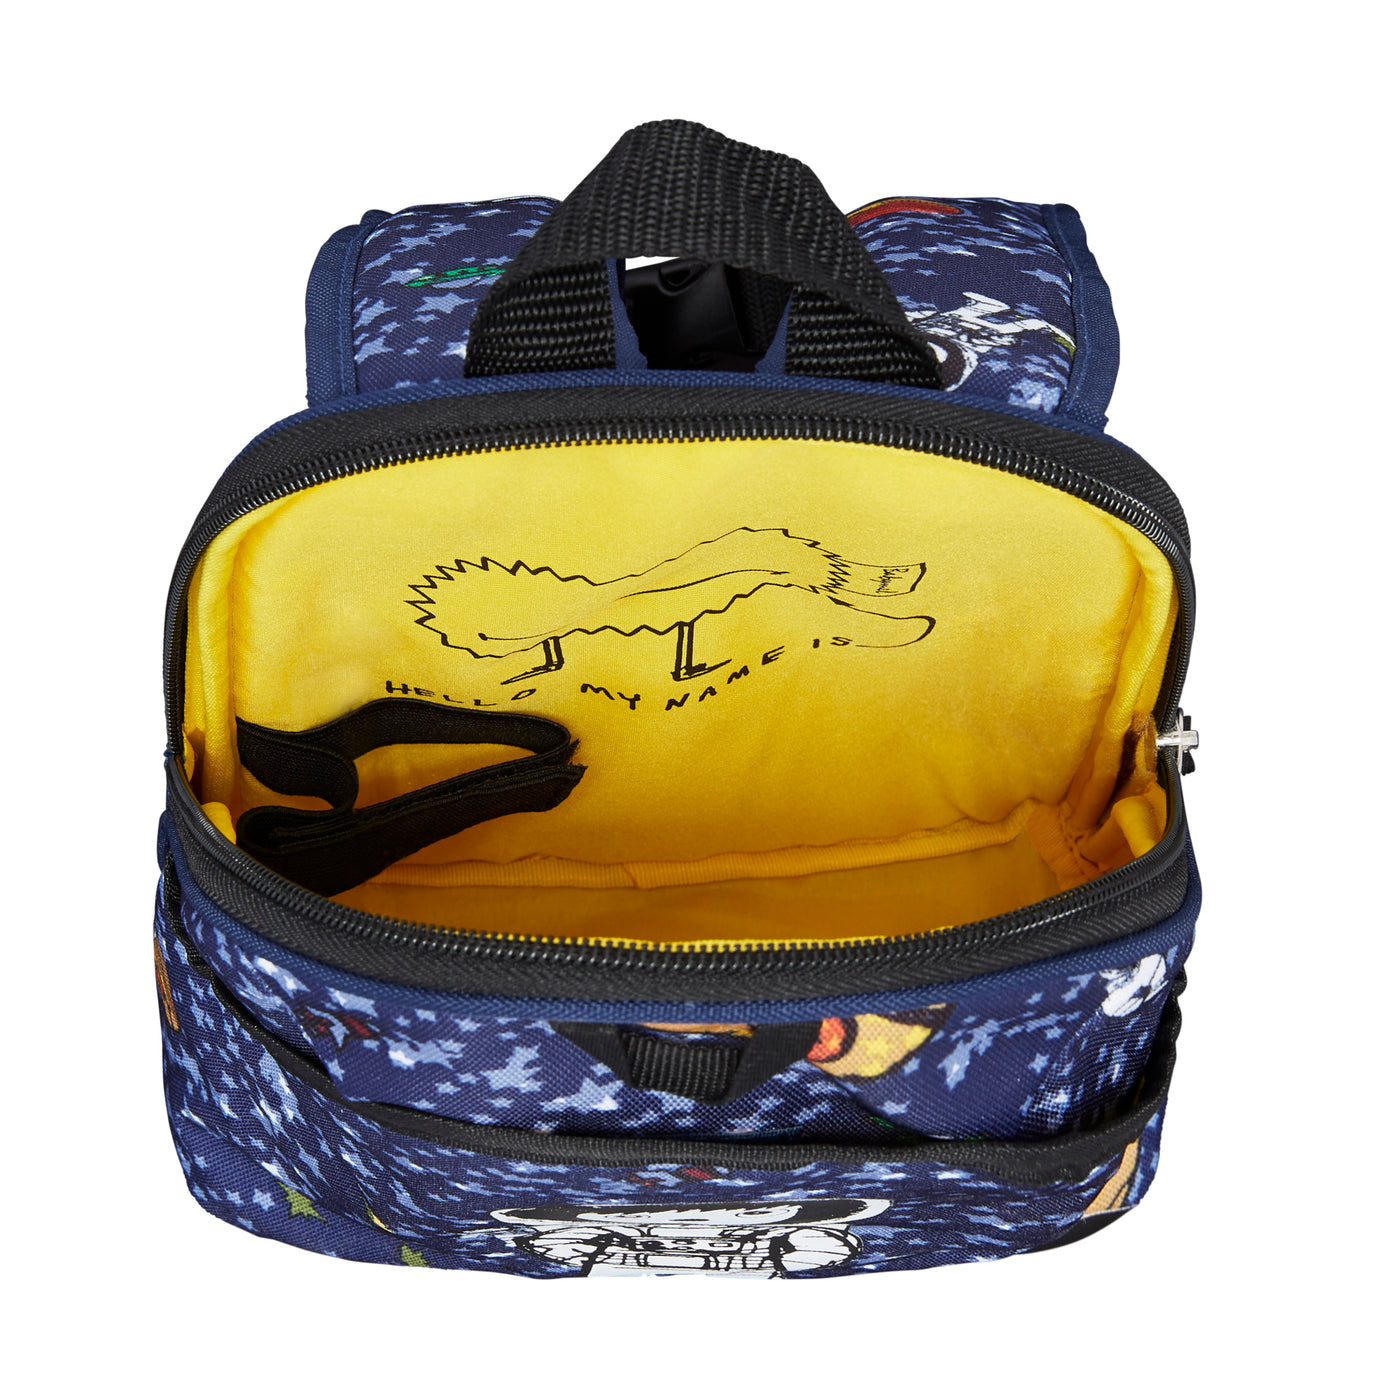 Mini Backpack / Reins - Spaceman